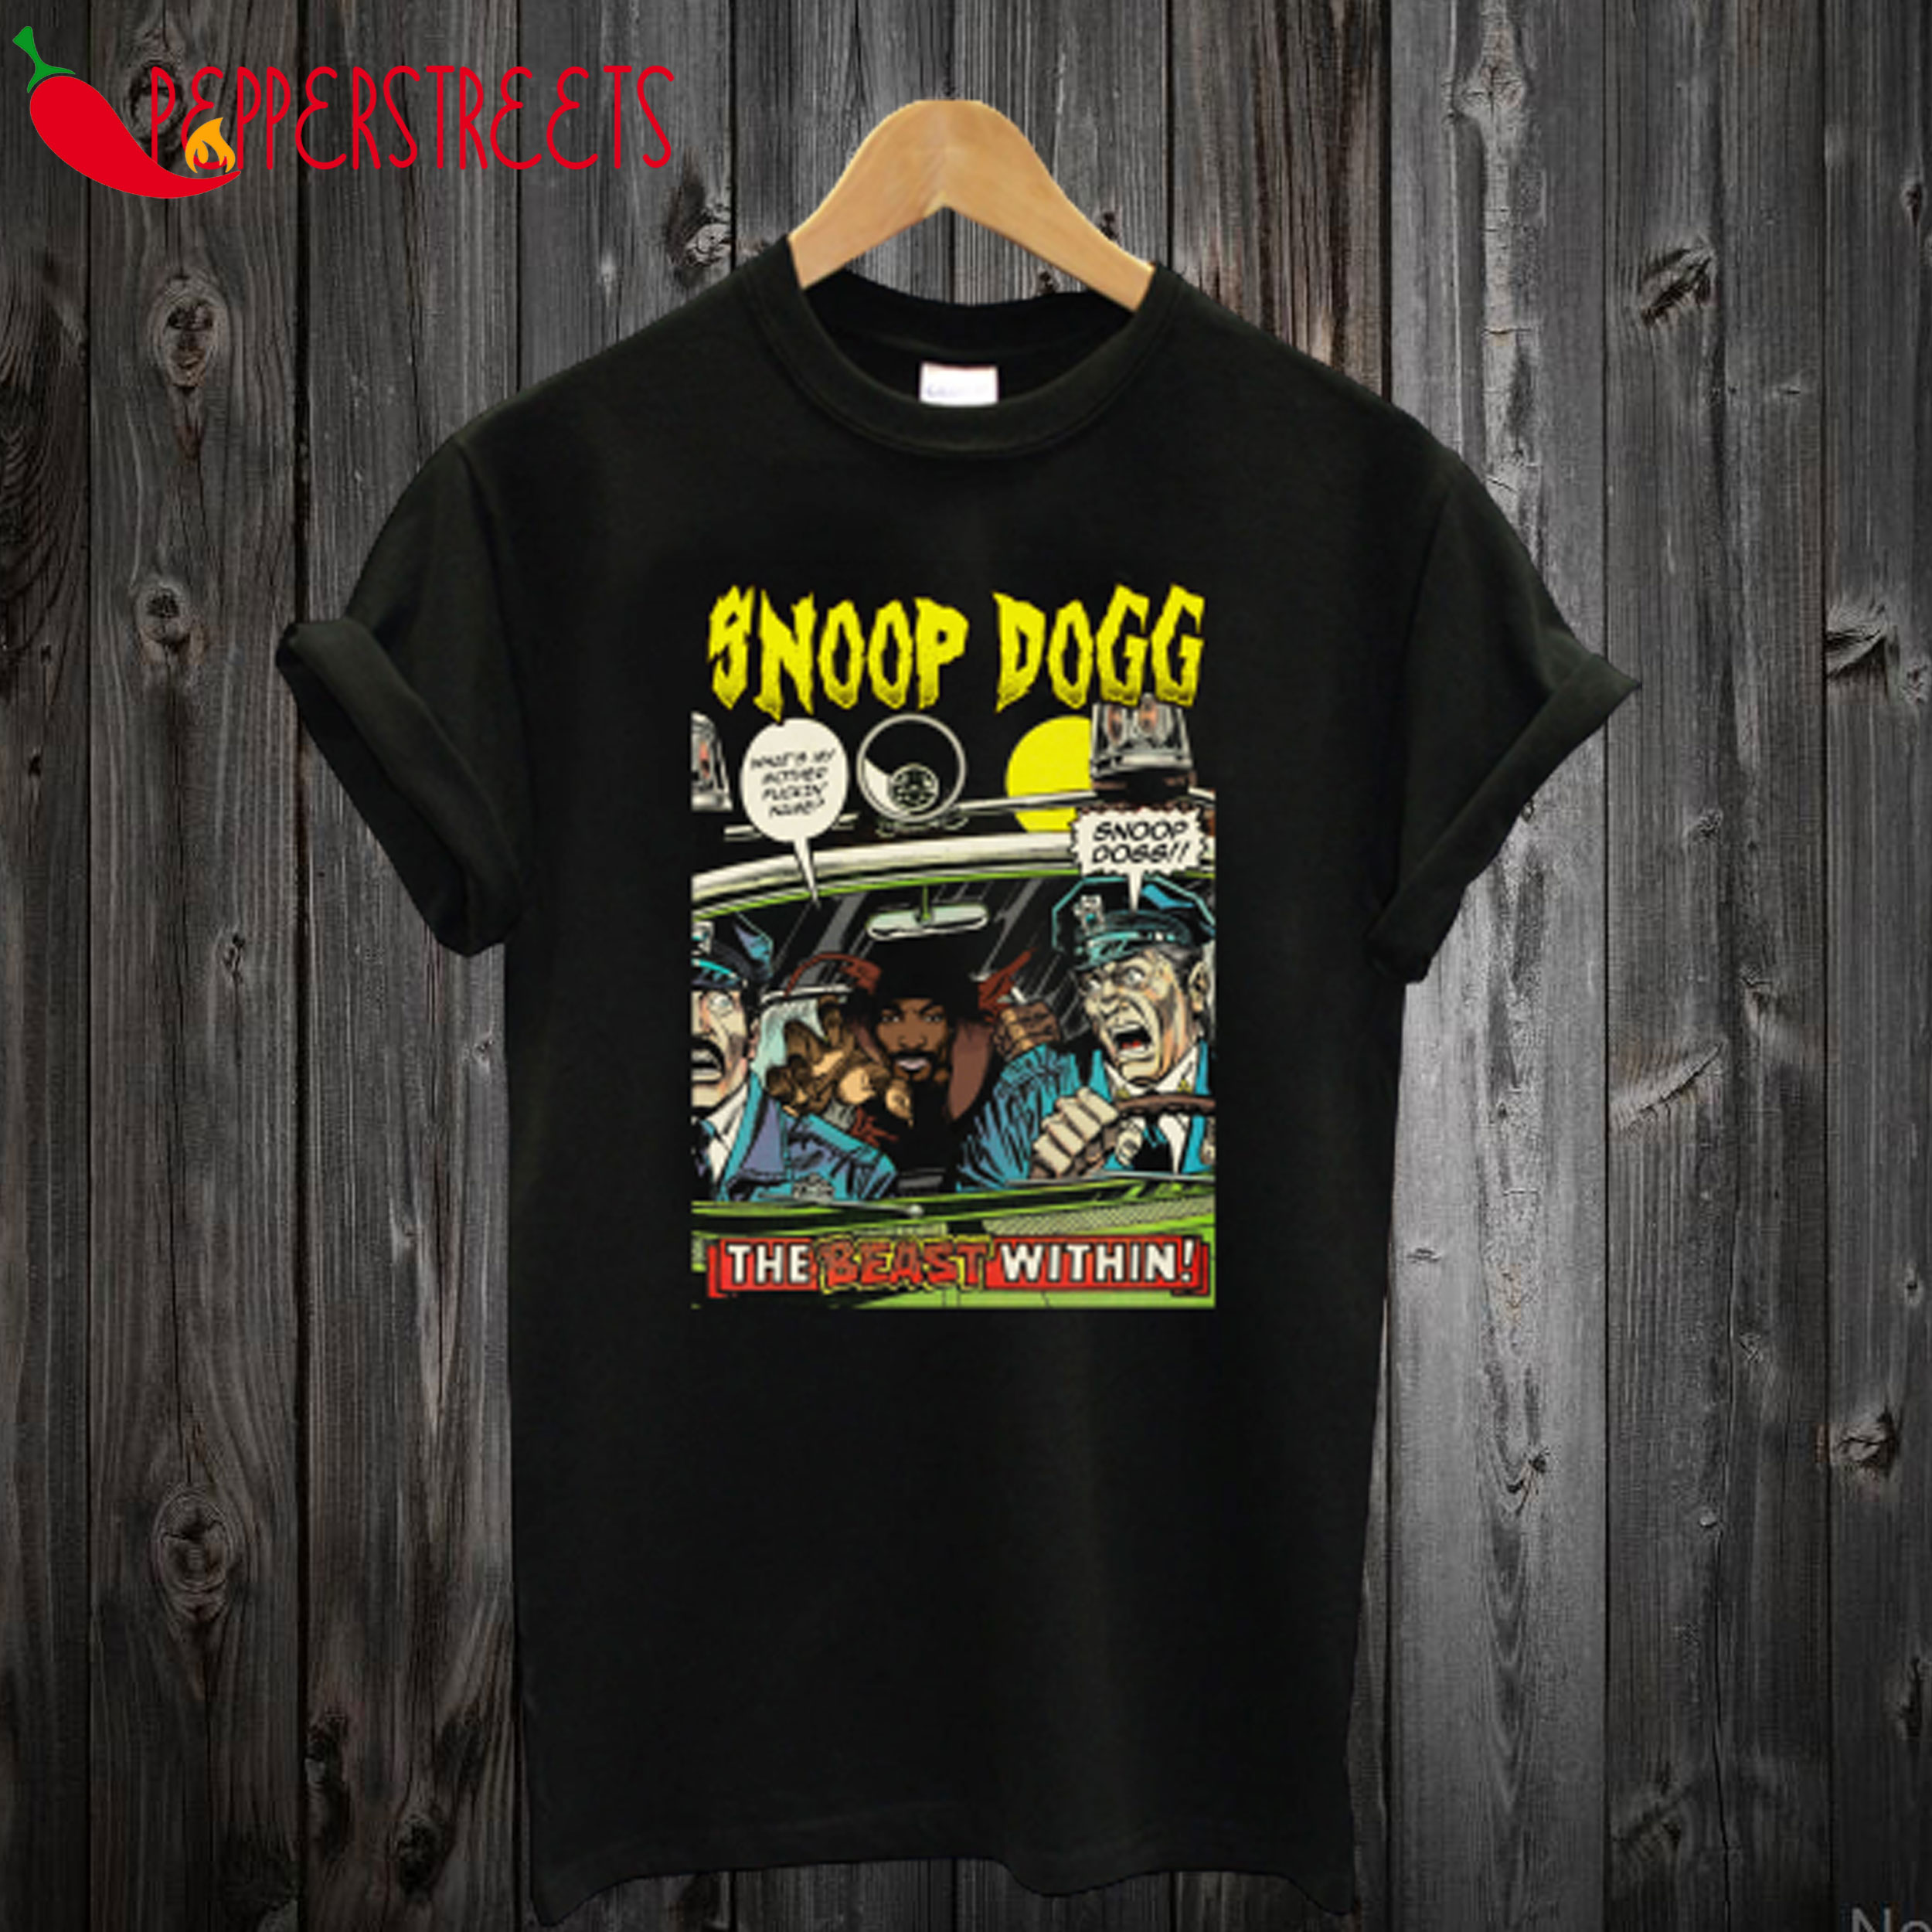 Dangerous Snoop Dogg T-Shirt